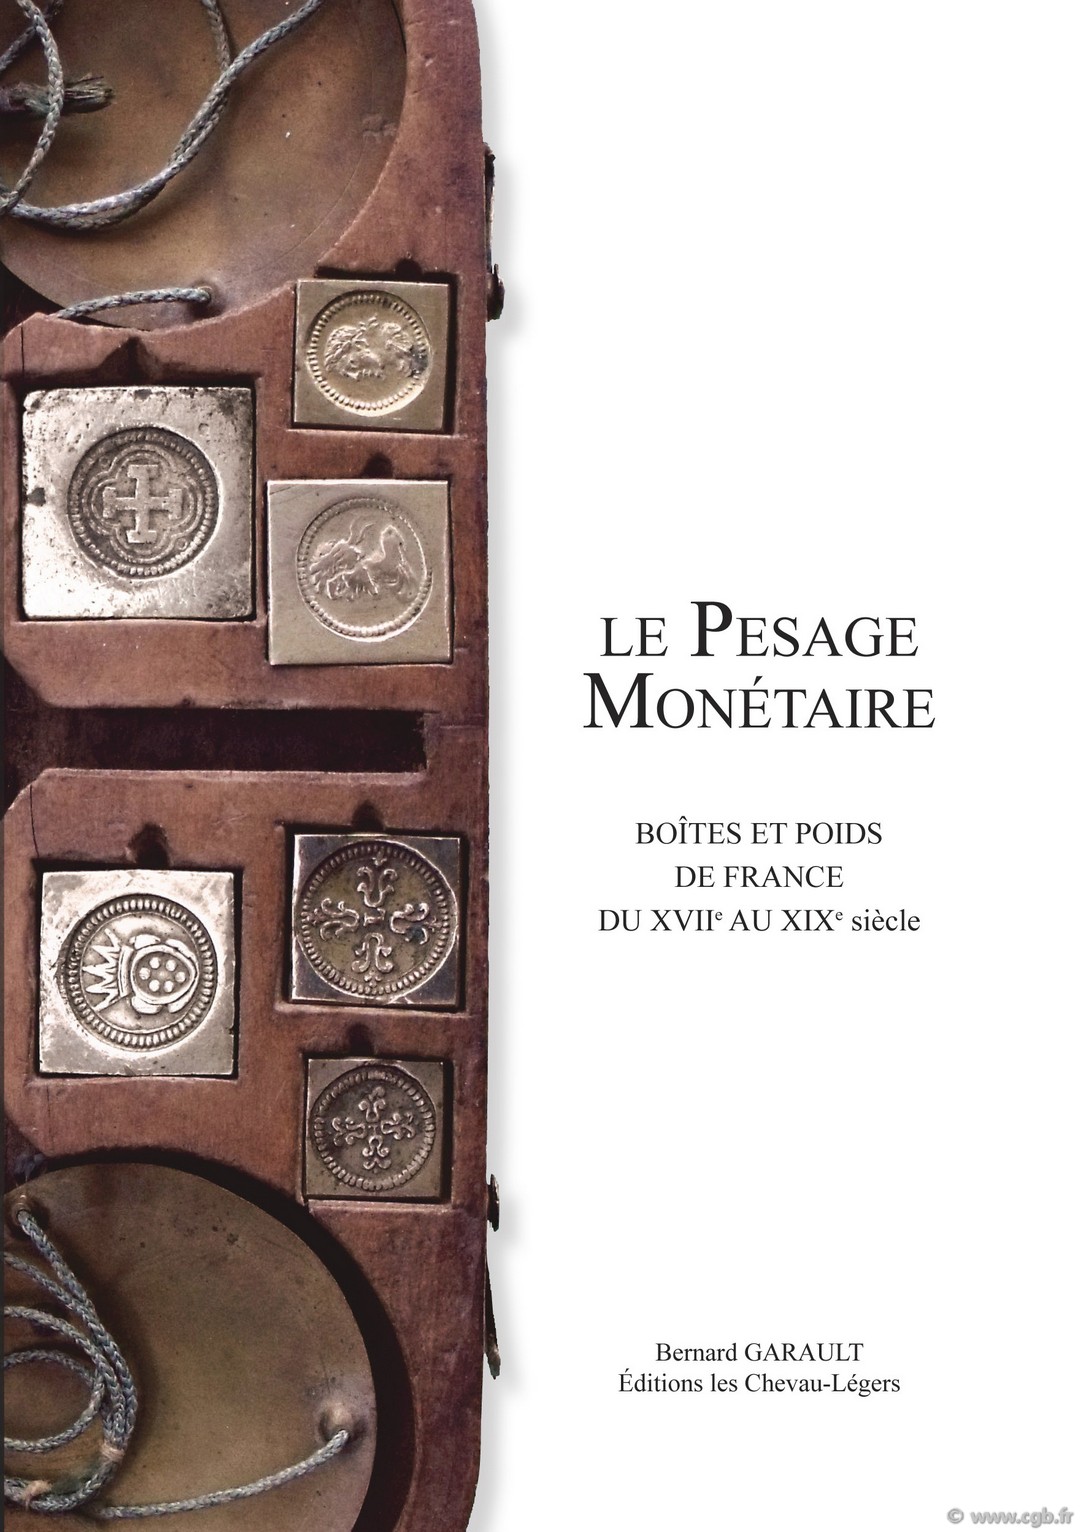 Le Pesage Monétaire, Boîtes et poids de France du XVIIe au XIXe siècle GARAULT Bernard